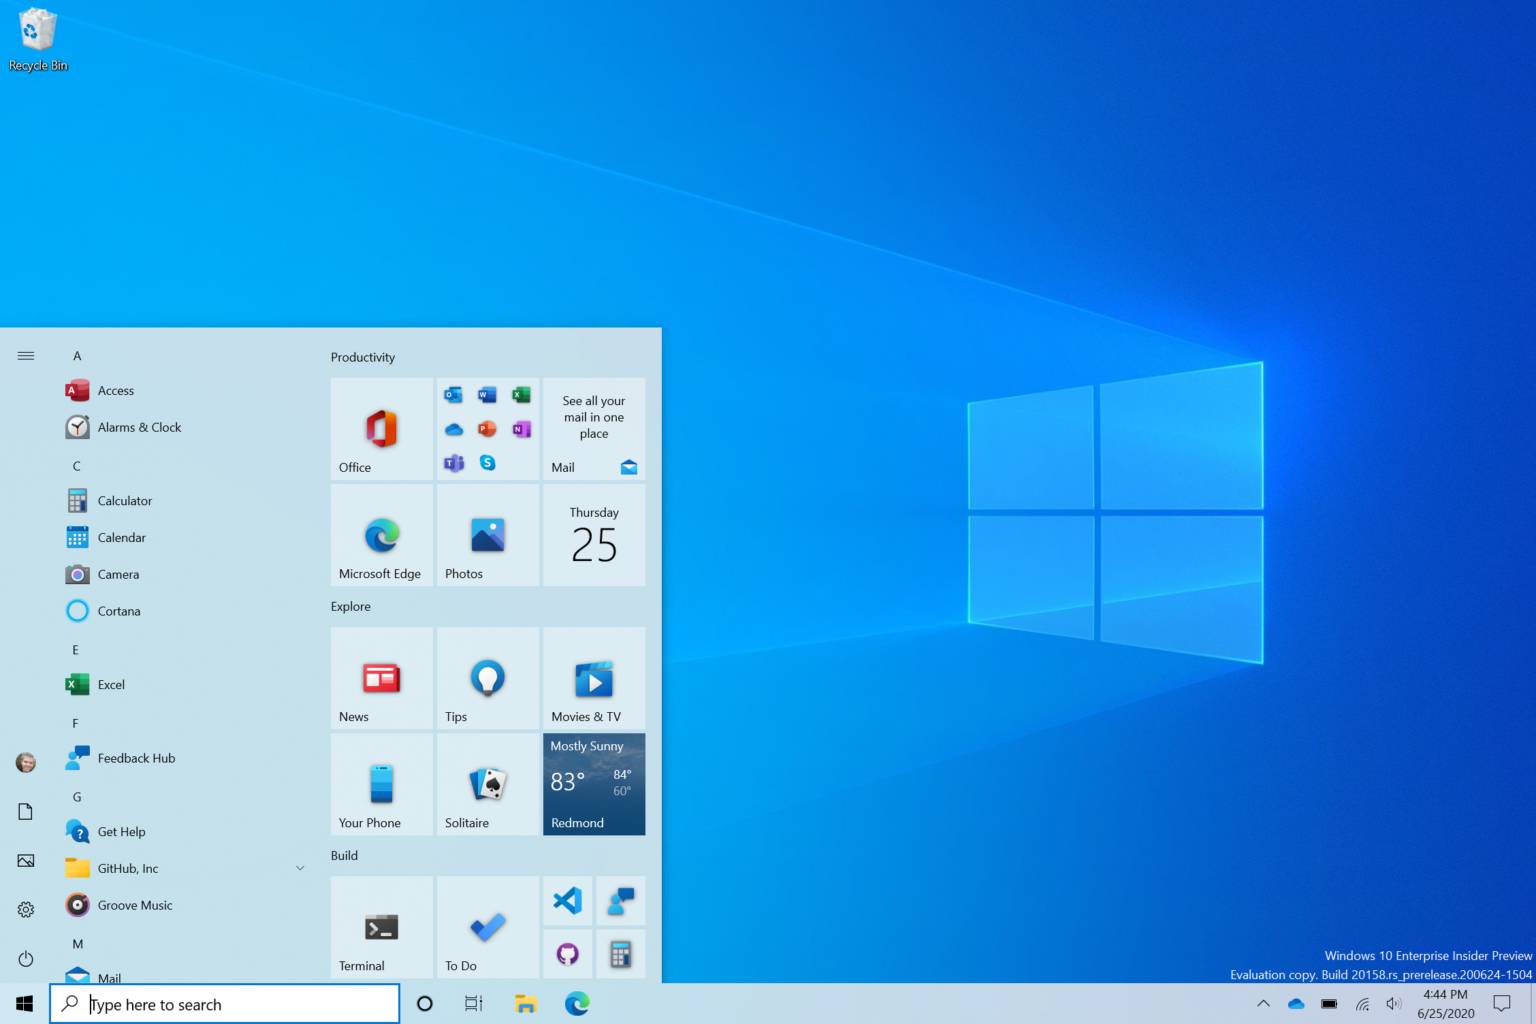 New start menu present in Windows 10 21H1 update